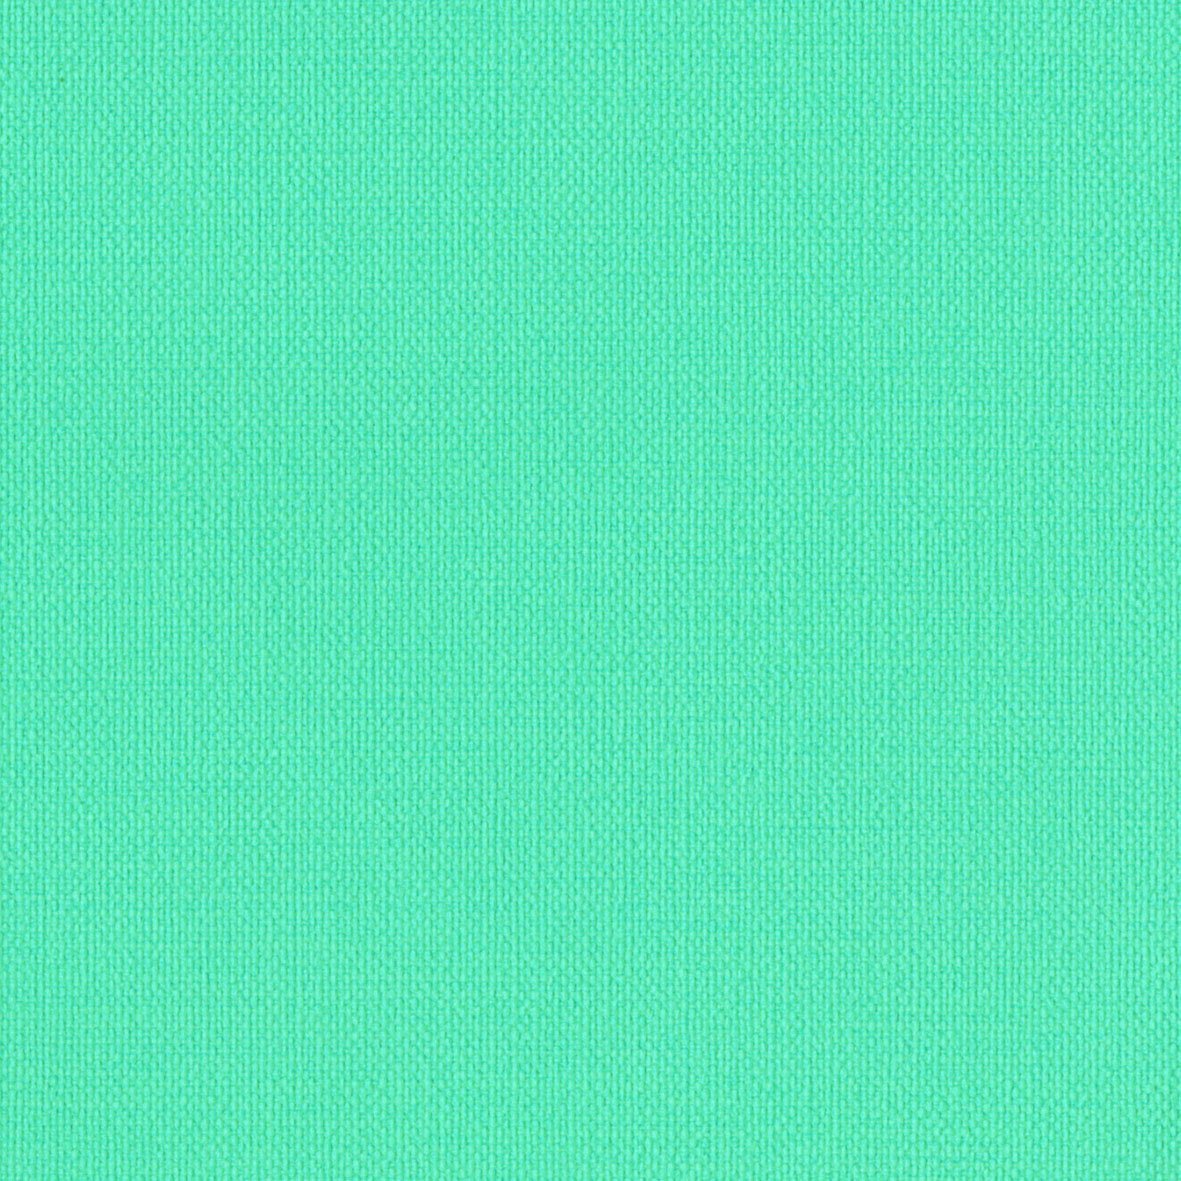 リリカラ 壁紙42m シンフル 織物調 ブルー LL-8241 B01MSILBY6 42m|ブルー